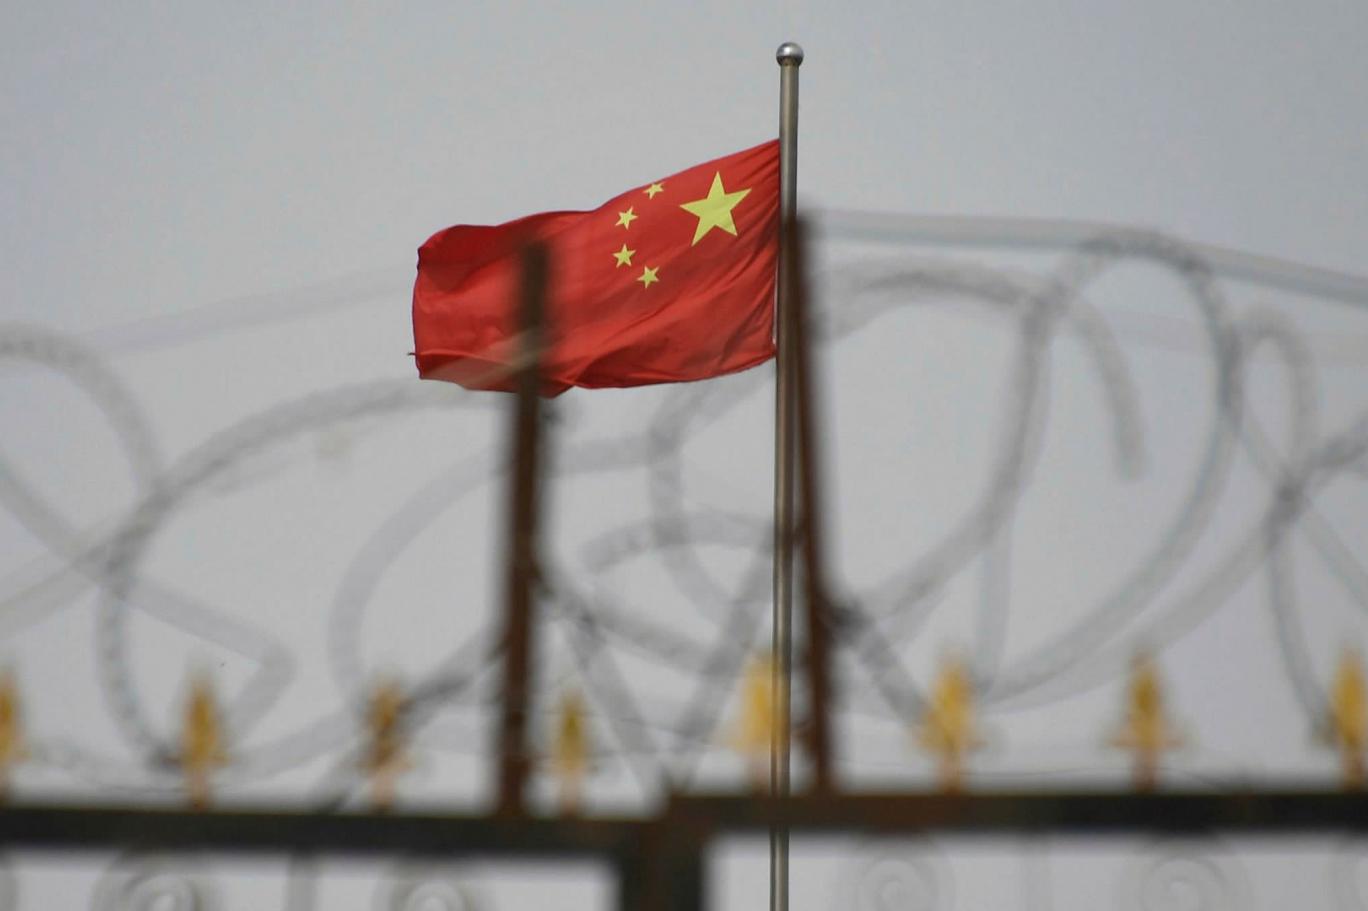 Zorla çalıştırılan Uygurları gerekçe gösteren ABD, 5 Çin şirketine yasak  getirdi | Independent Türkçe